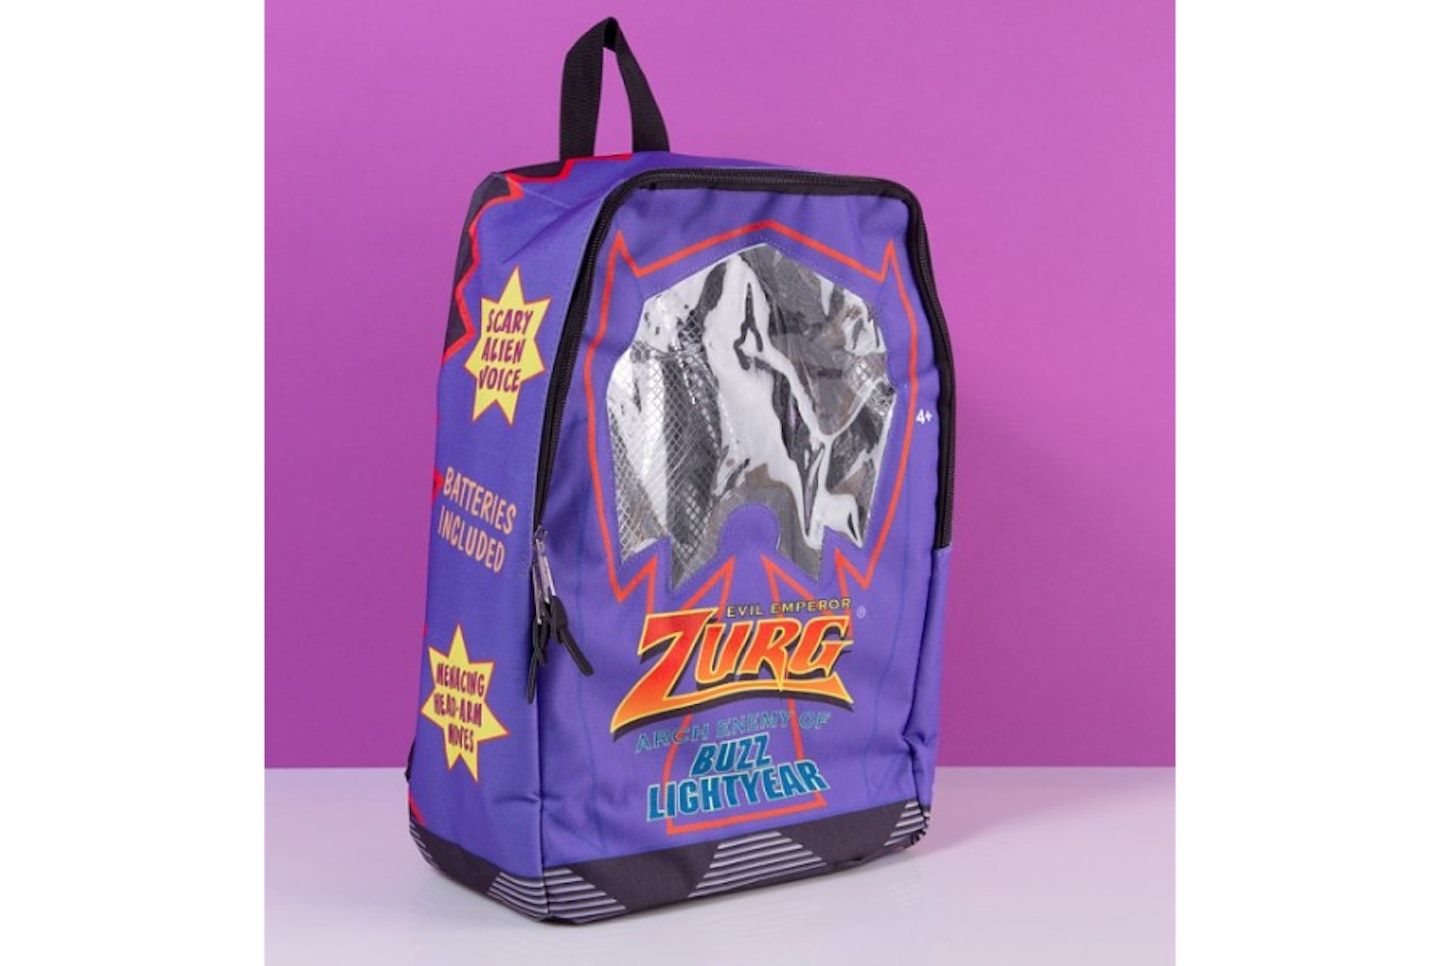 Disney Pixar Toy Story Evil Emperor Zurg Box Backpack